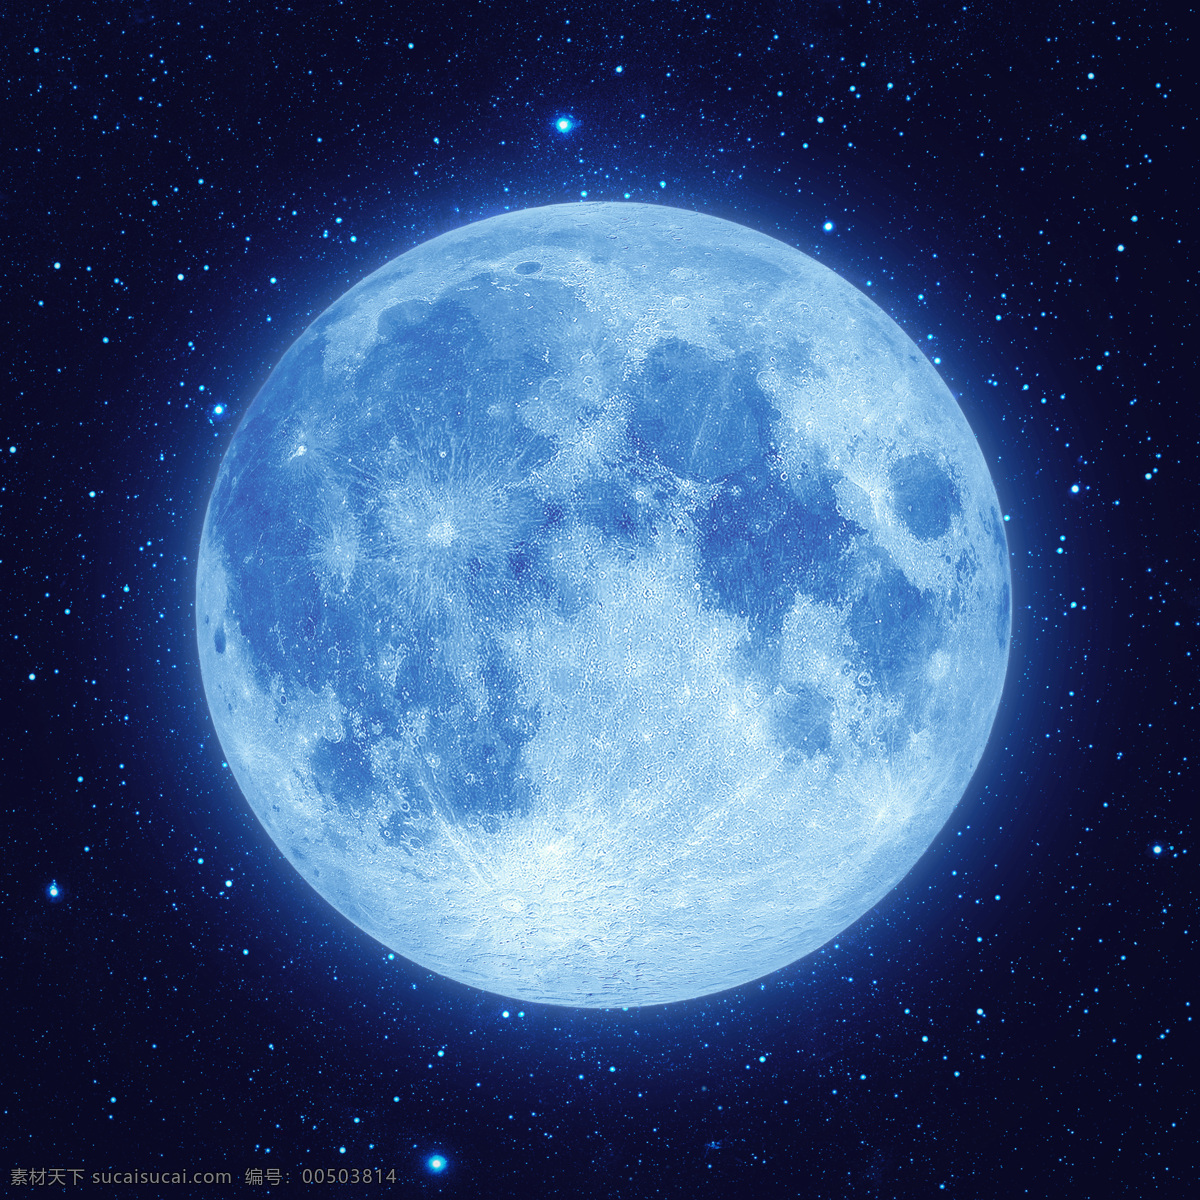 月亮 月球 夜晚 星空 夜空 自然风景 中秋节 圆月 自然景观 月色 明月 月圆之夜 月圆 星球 行星 球体 自然风光